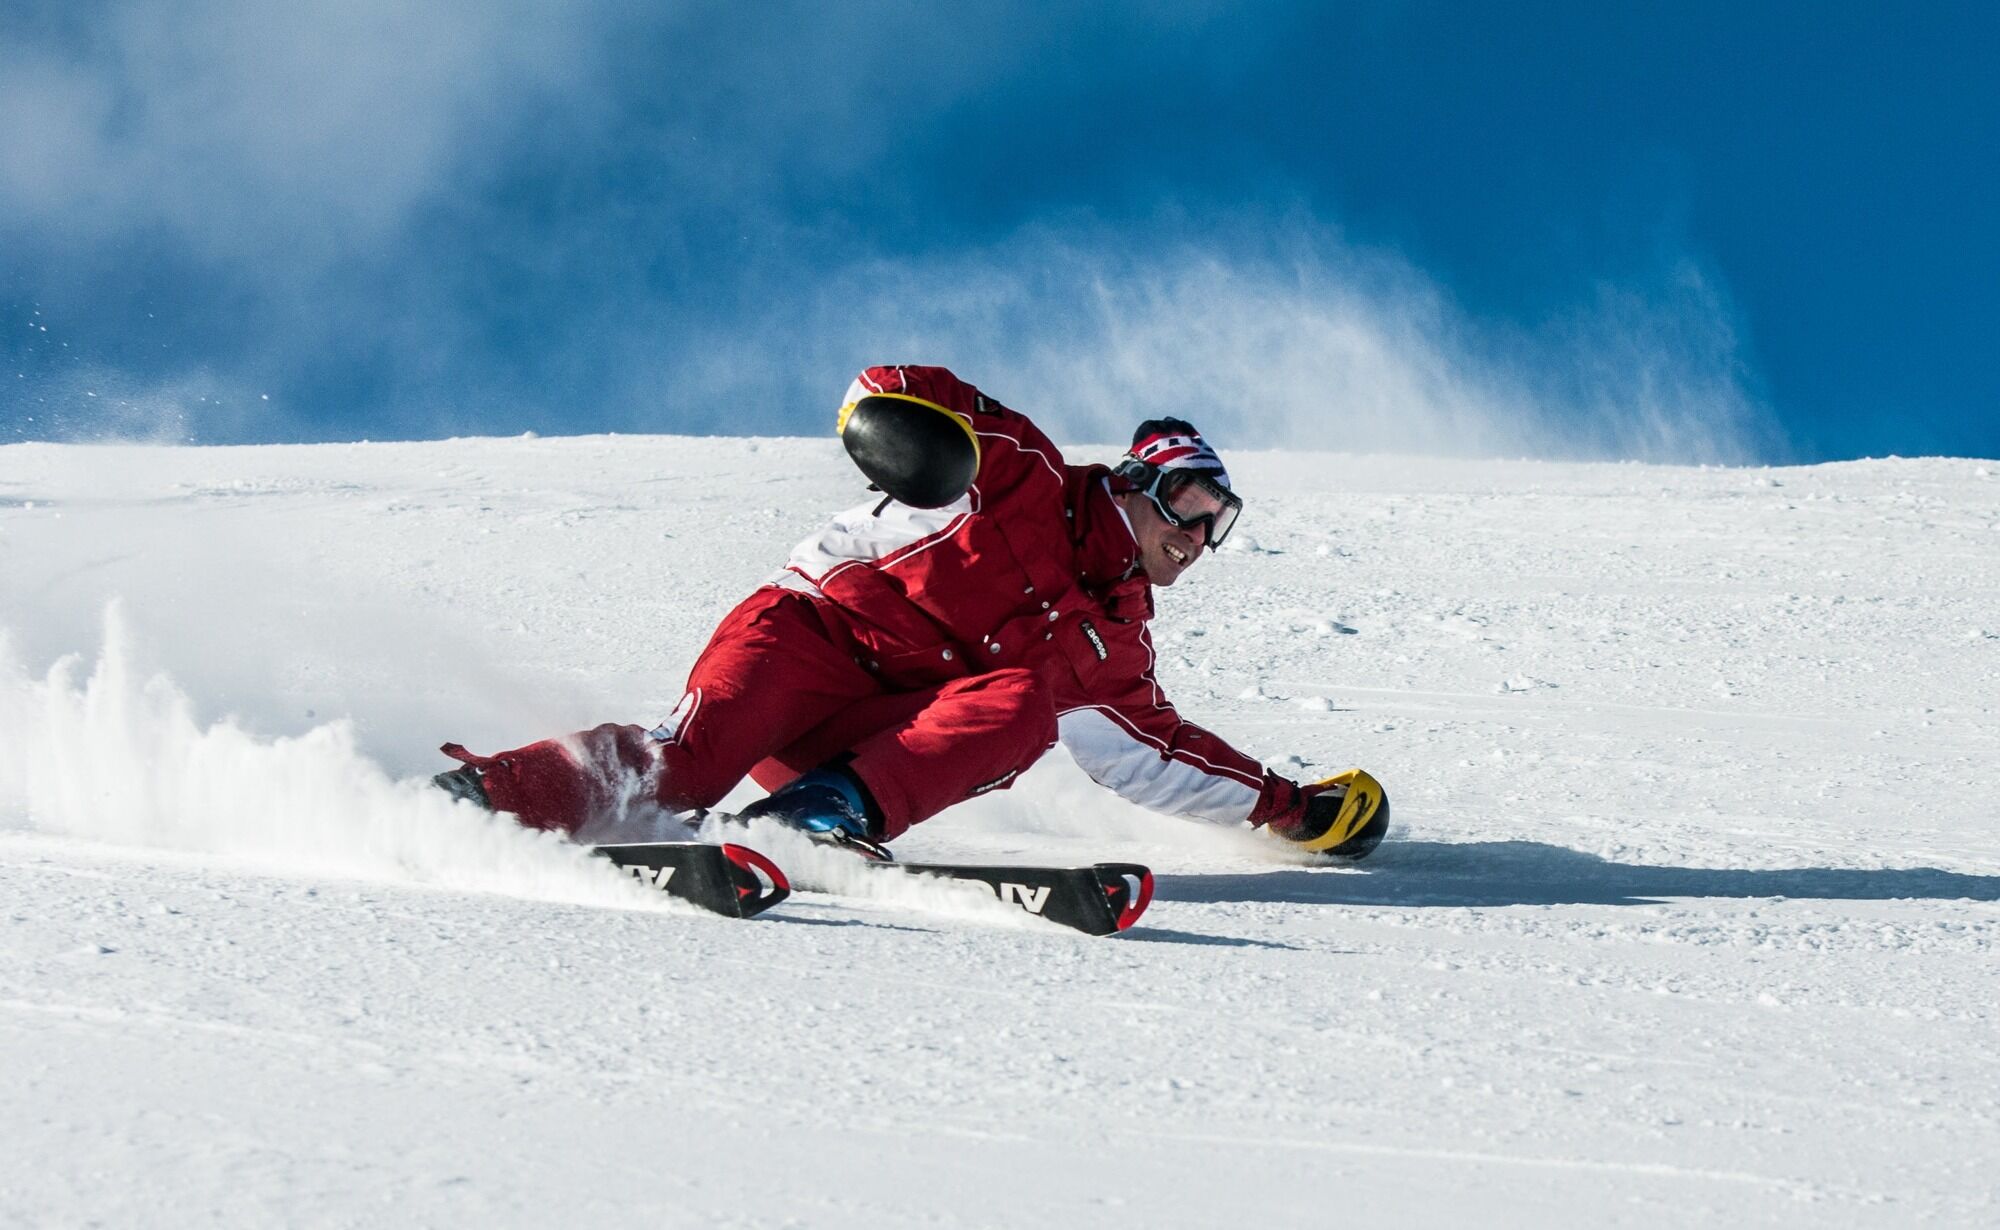 10 best ski resorts in Japan